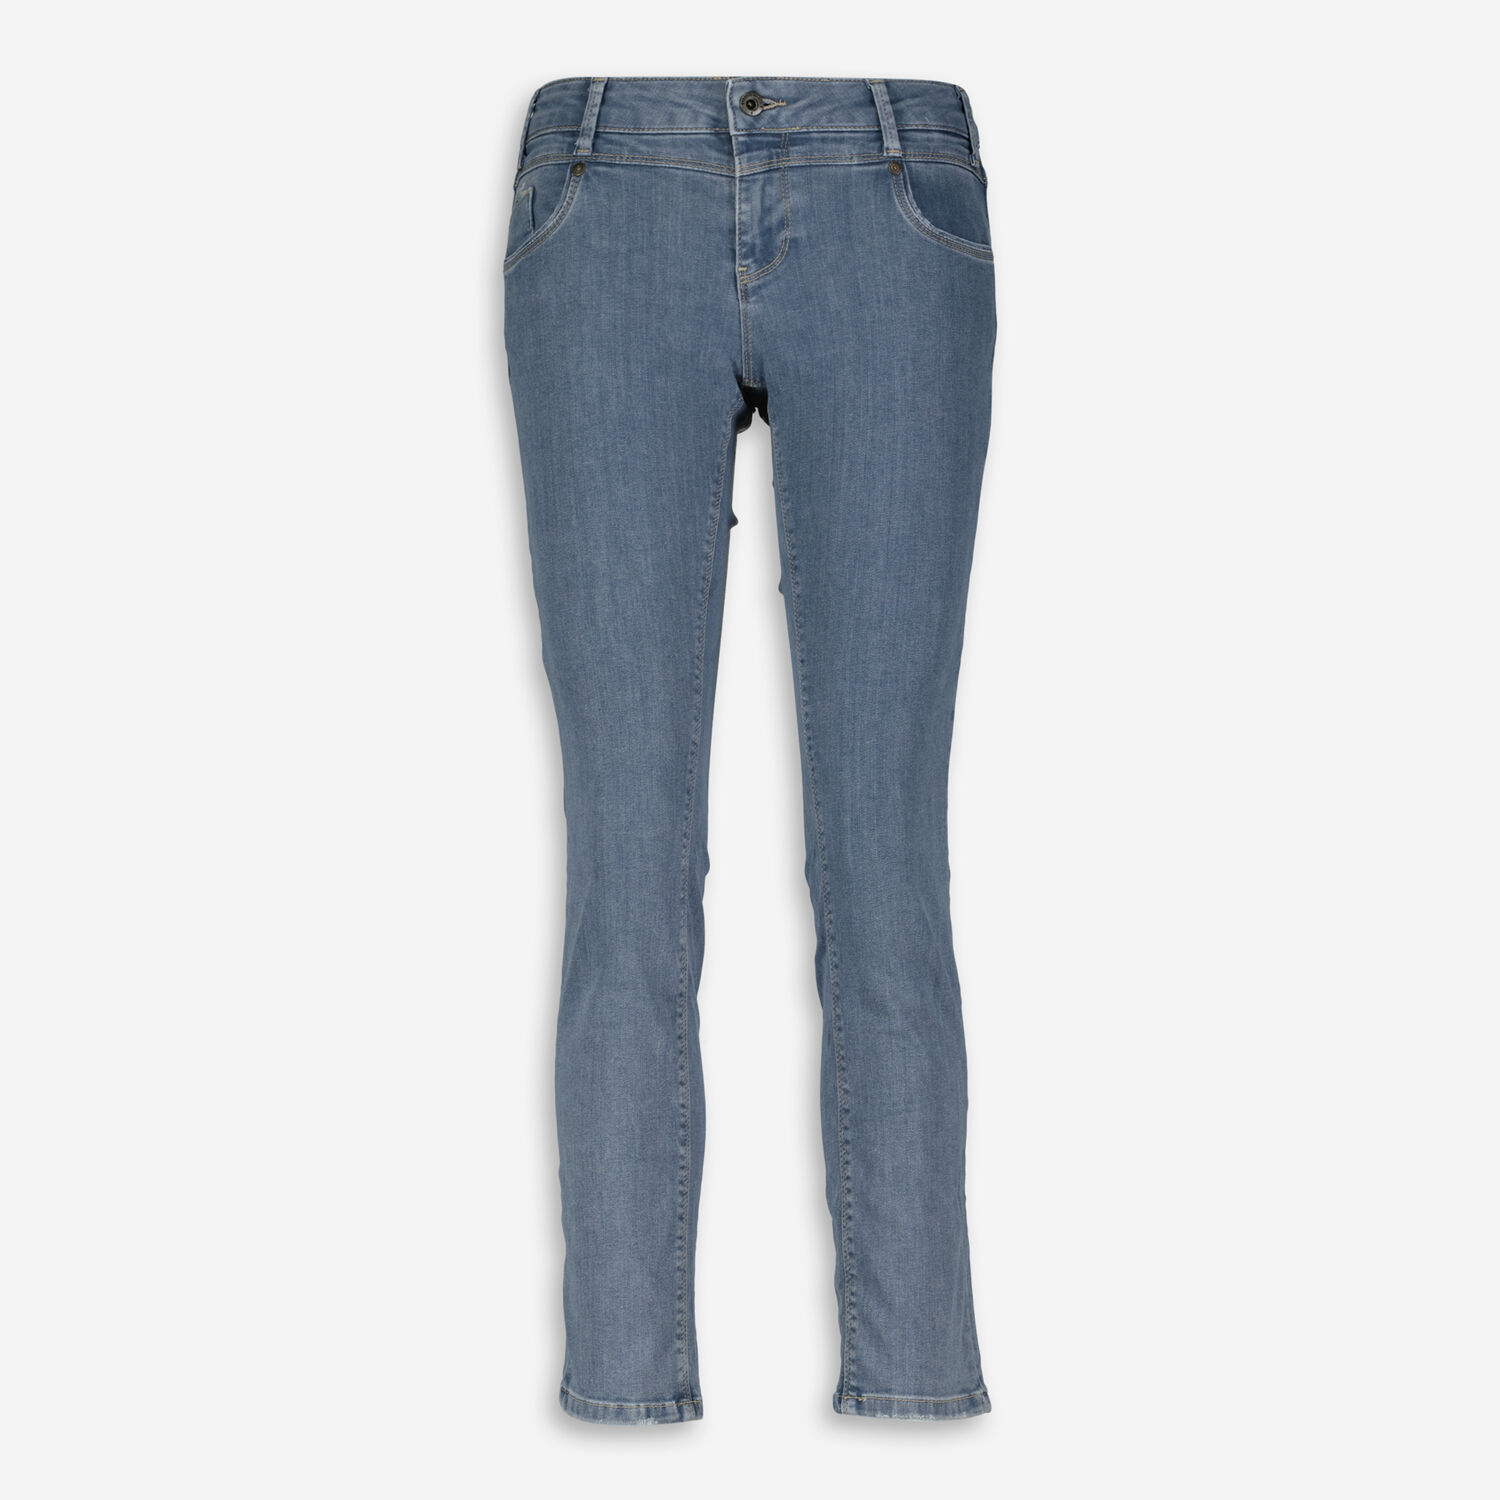 Серые джинсы обычного кроя Miracle Of Denim джинсы denim fashion серые 40 размер новые